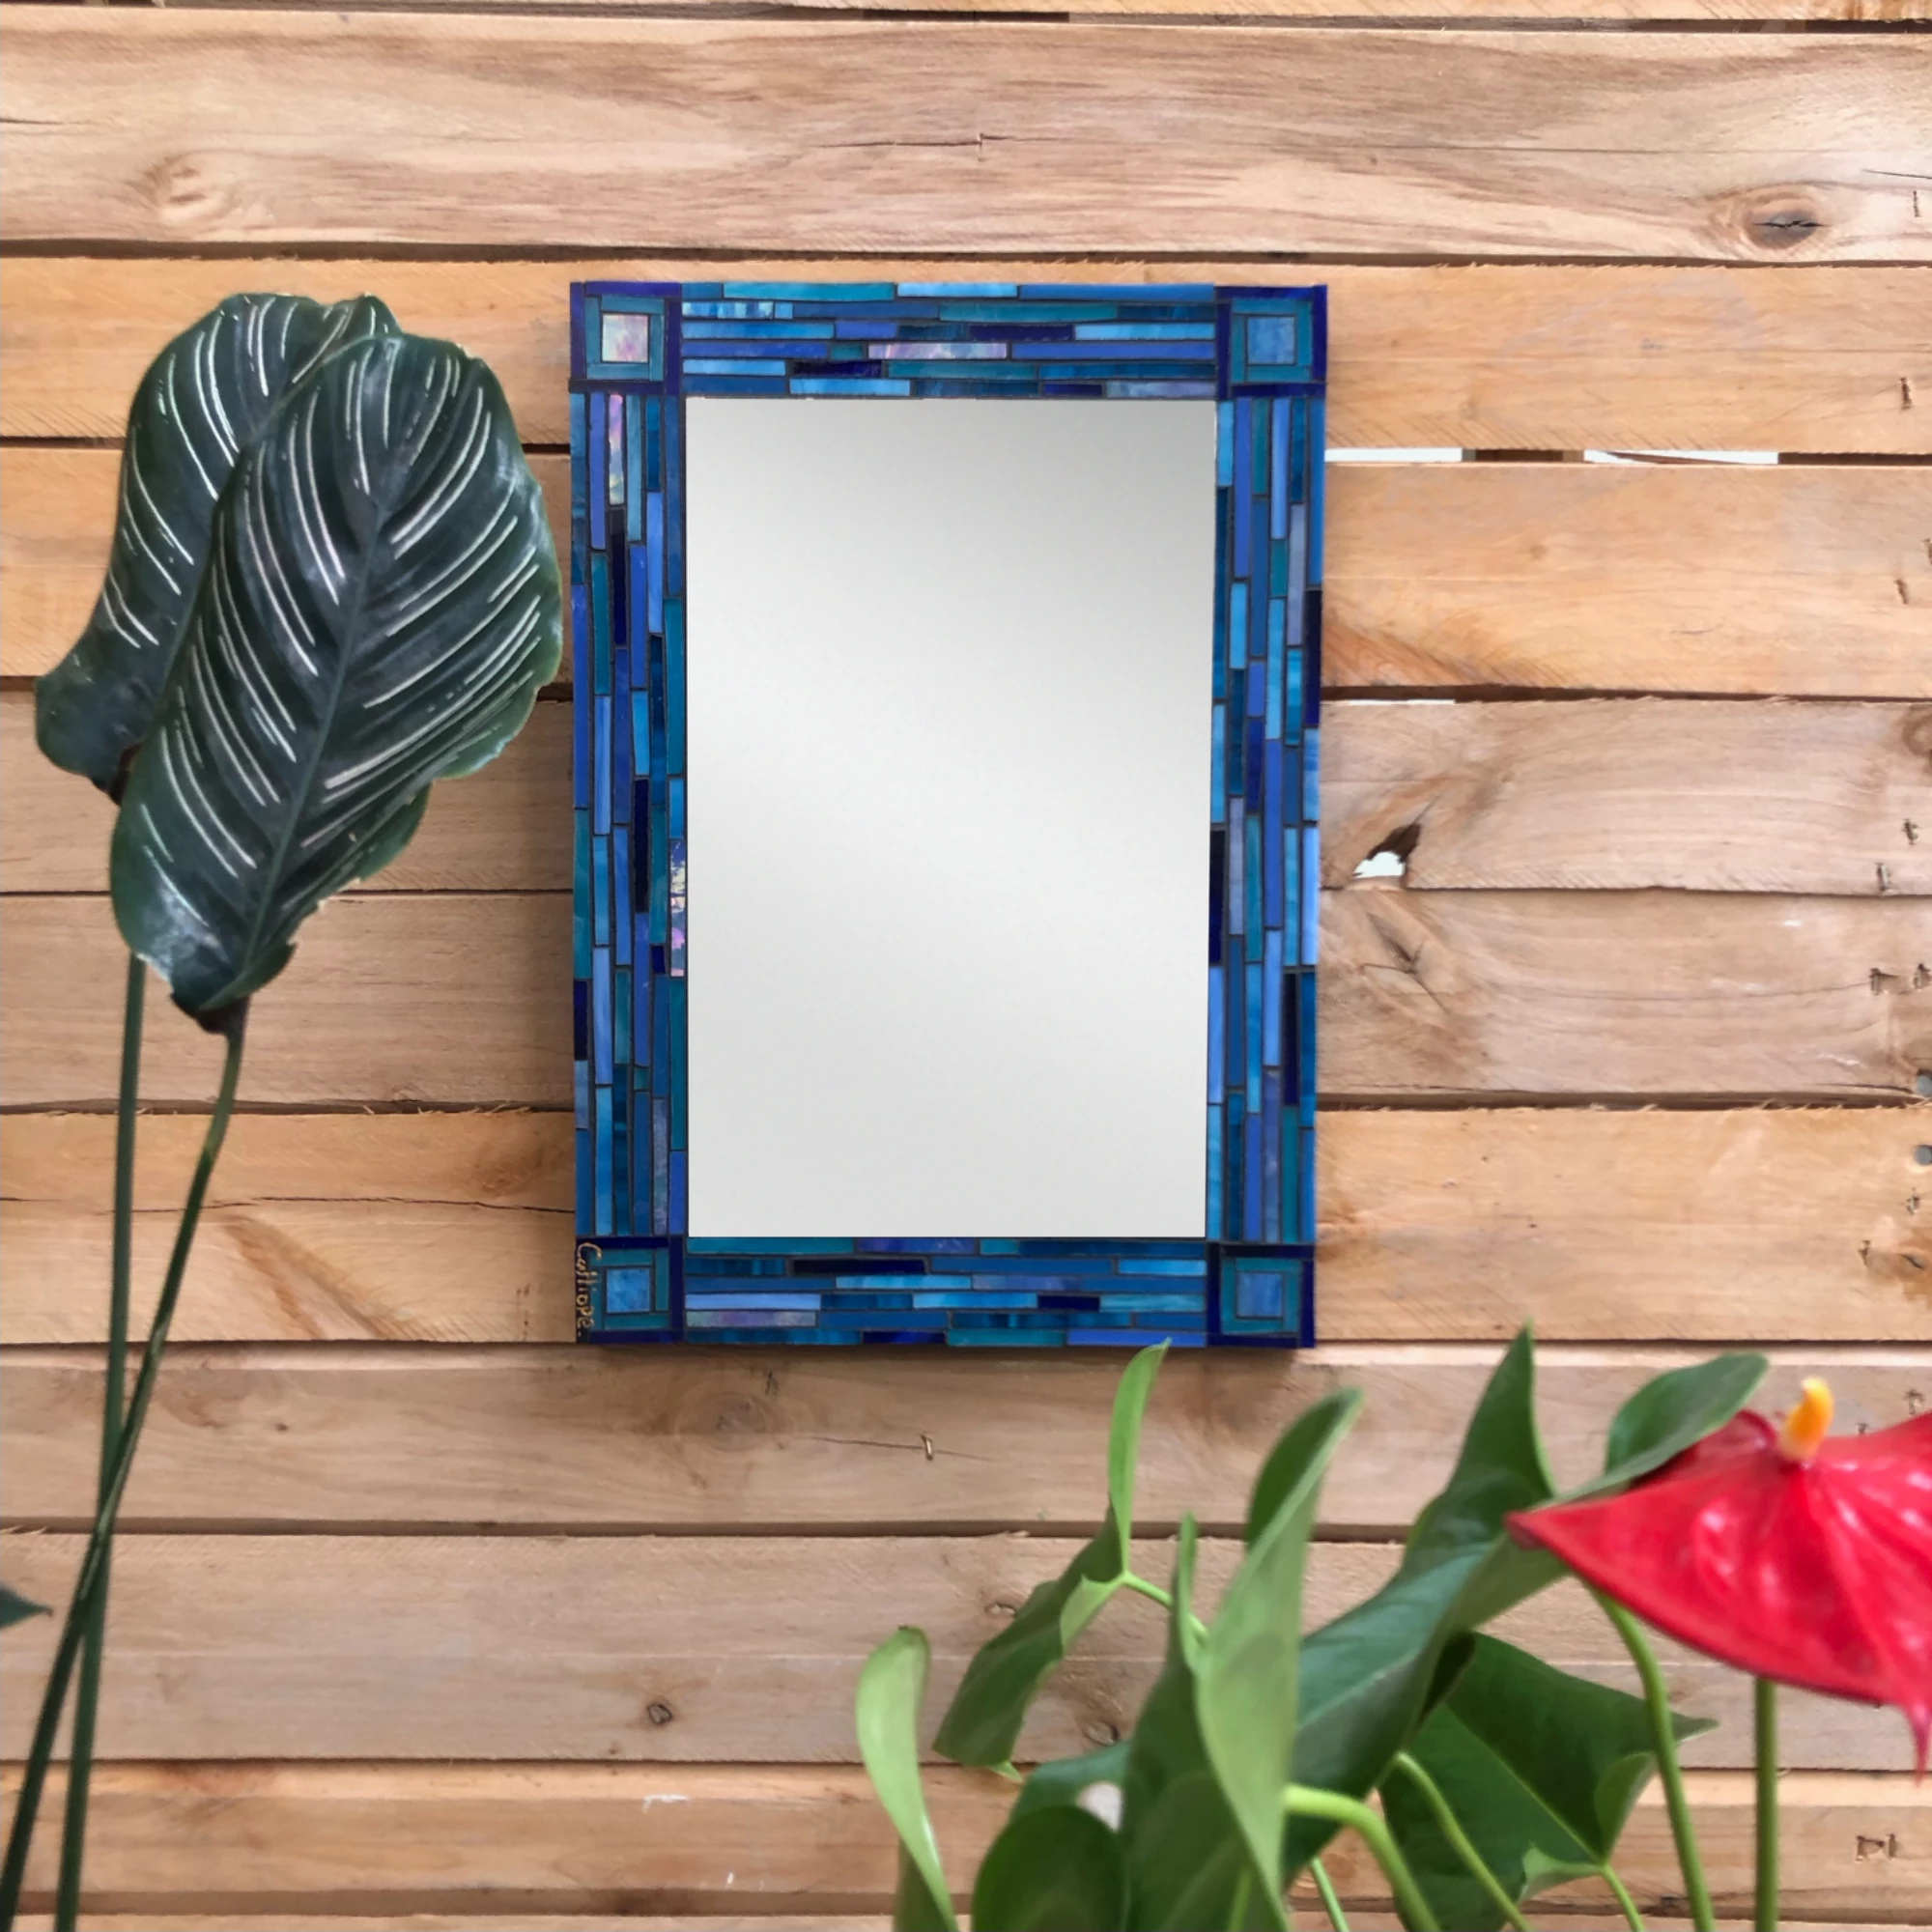 Blue shades mosaic mirror